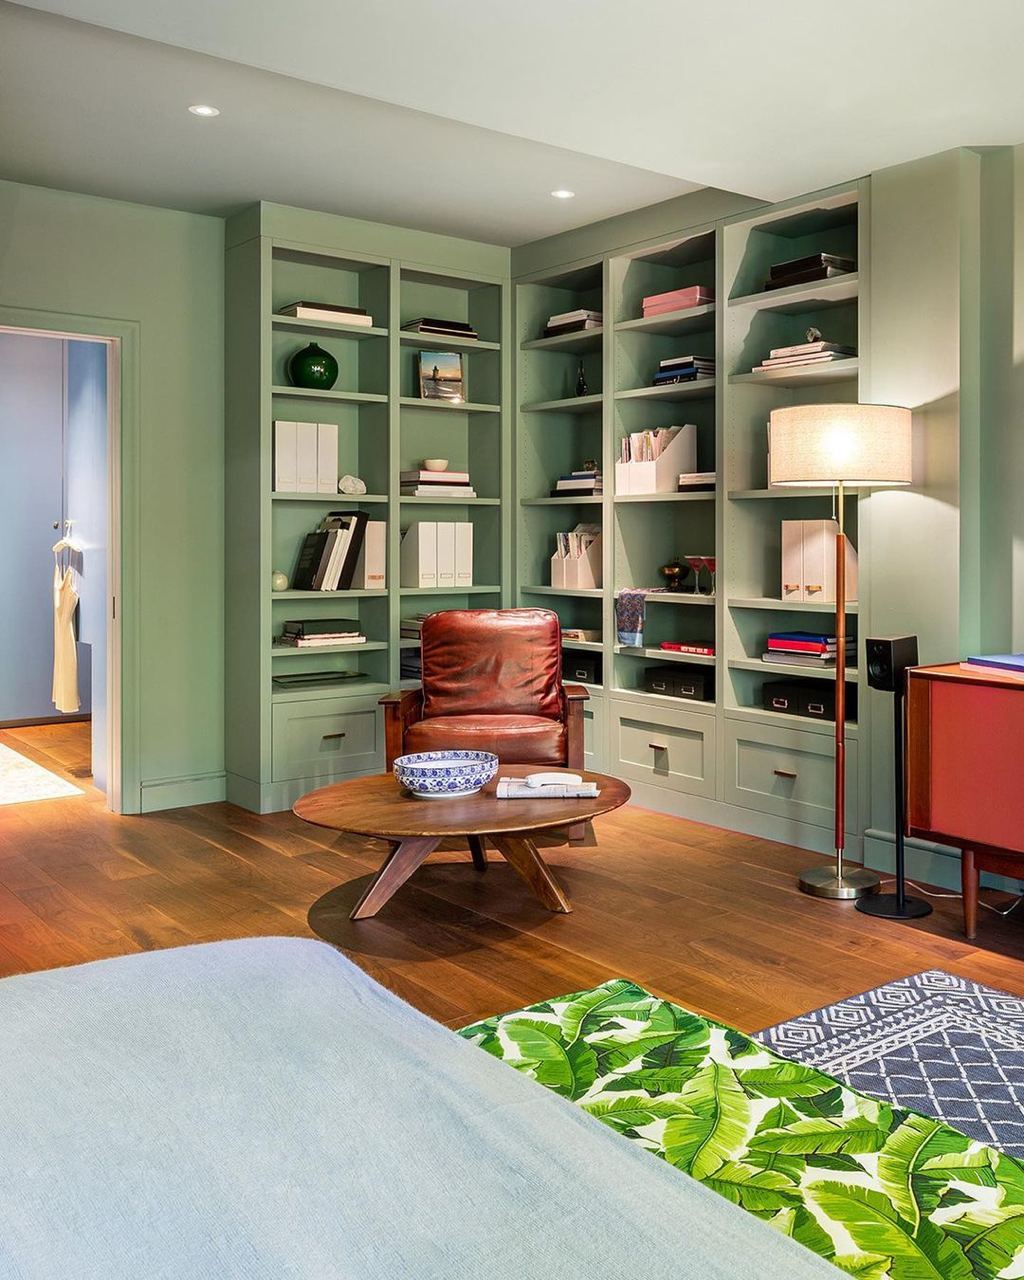 Квартиру Кэрри Брэдшоу теперь можно арендовать на Airbnb (фото 3)